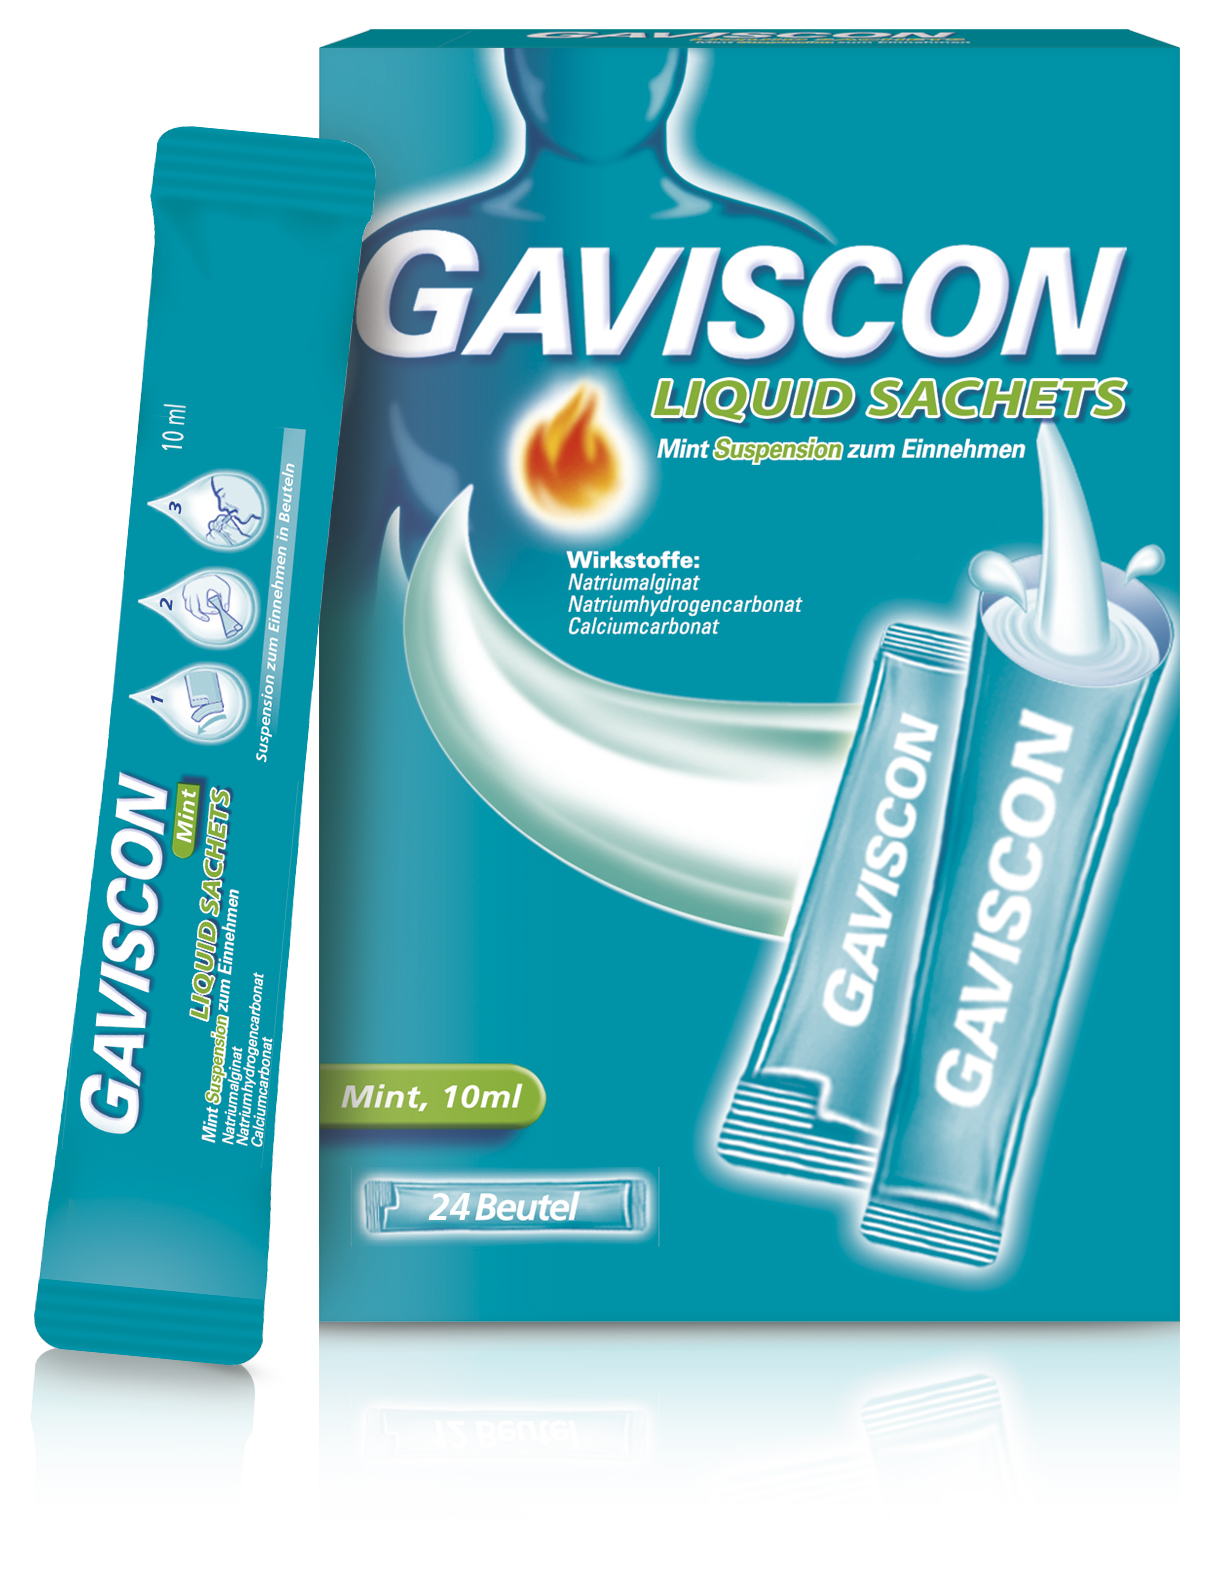 Gaviscon Liquid Mint Suspension Online Kaufen Bei Apothekenboteat.